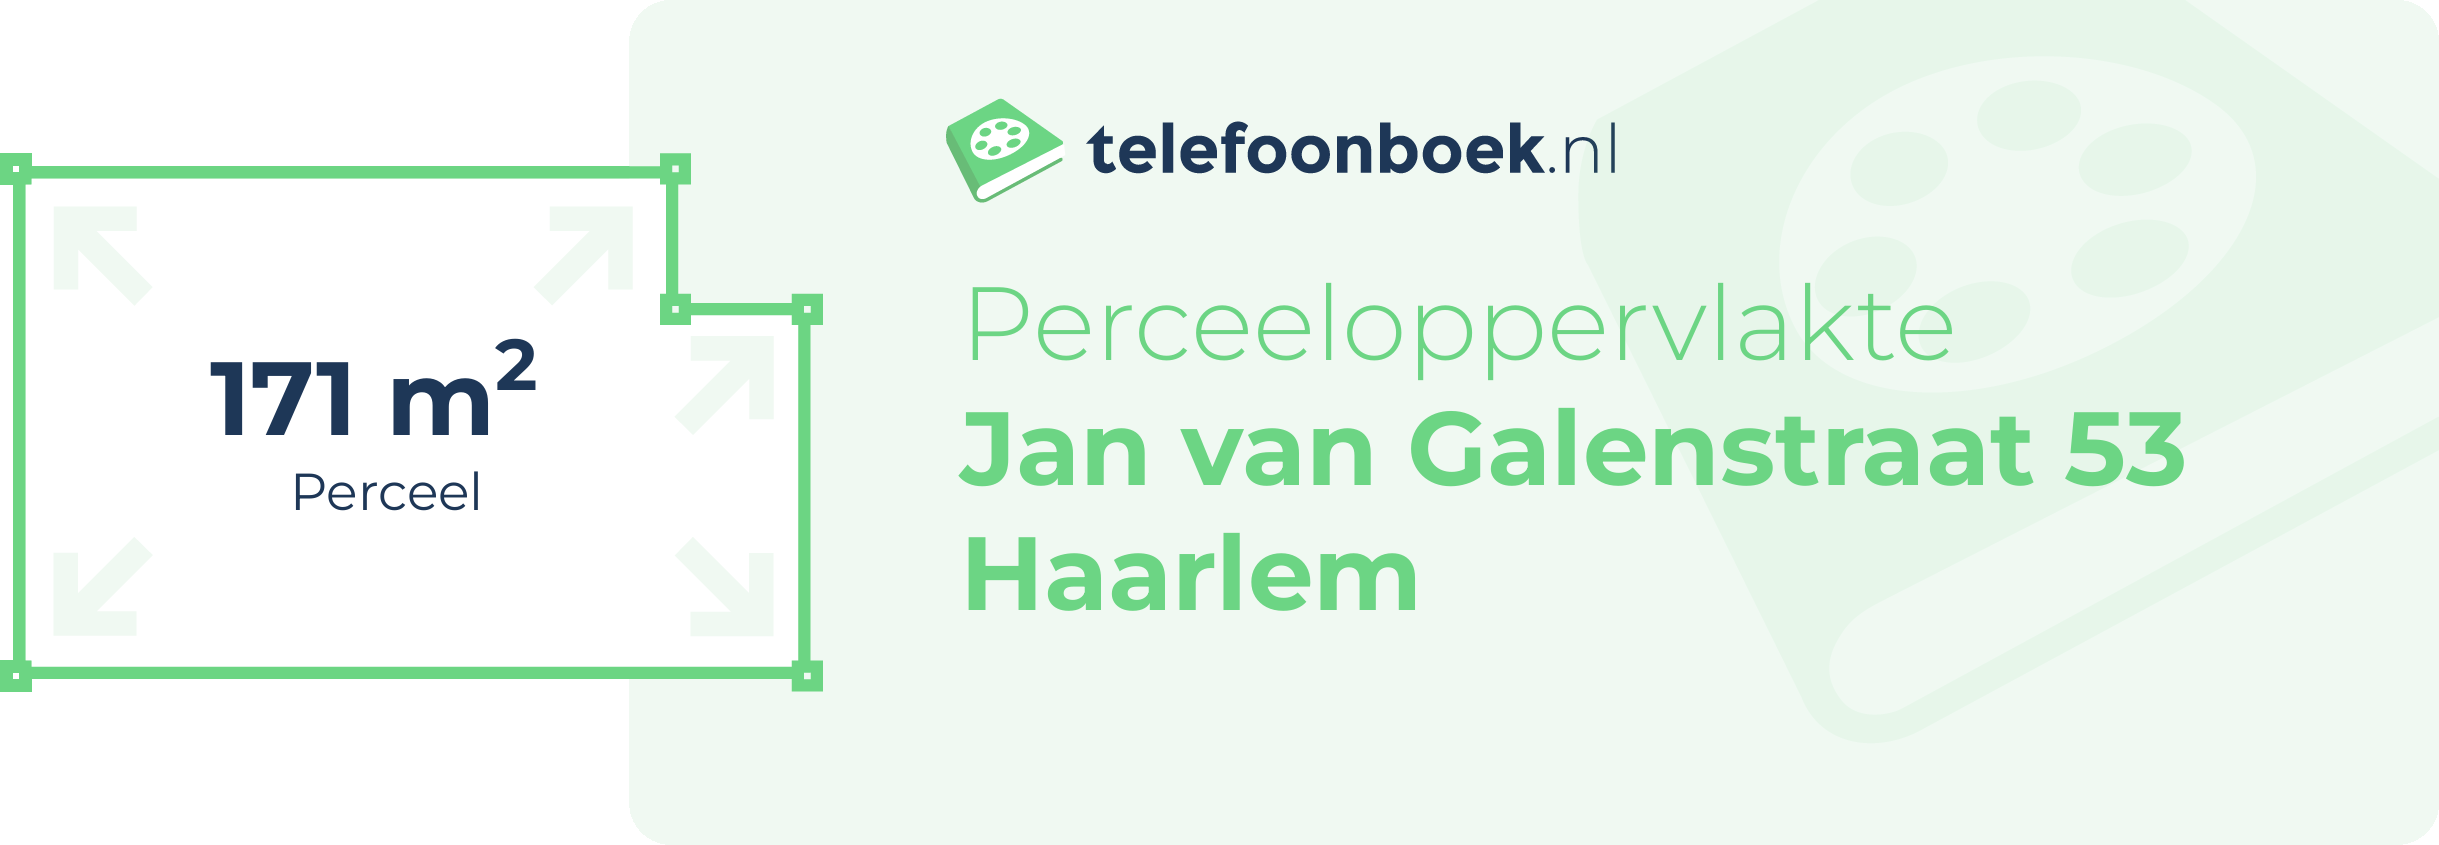 Perceeloppervlakte Jan Van Galenstraat 53 Haarlem